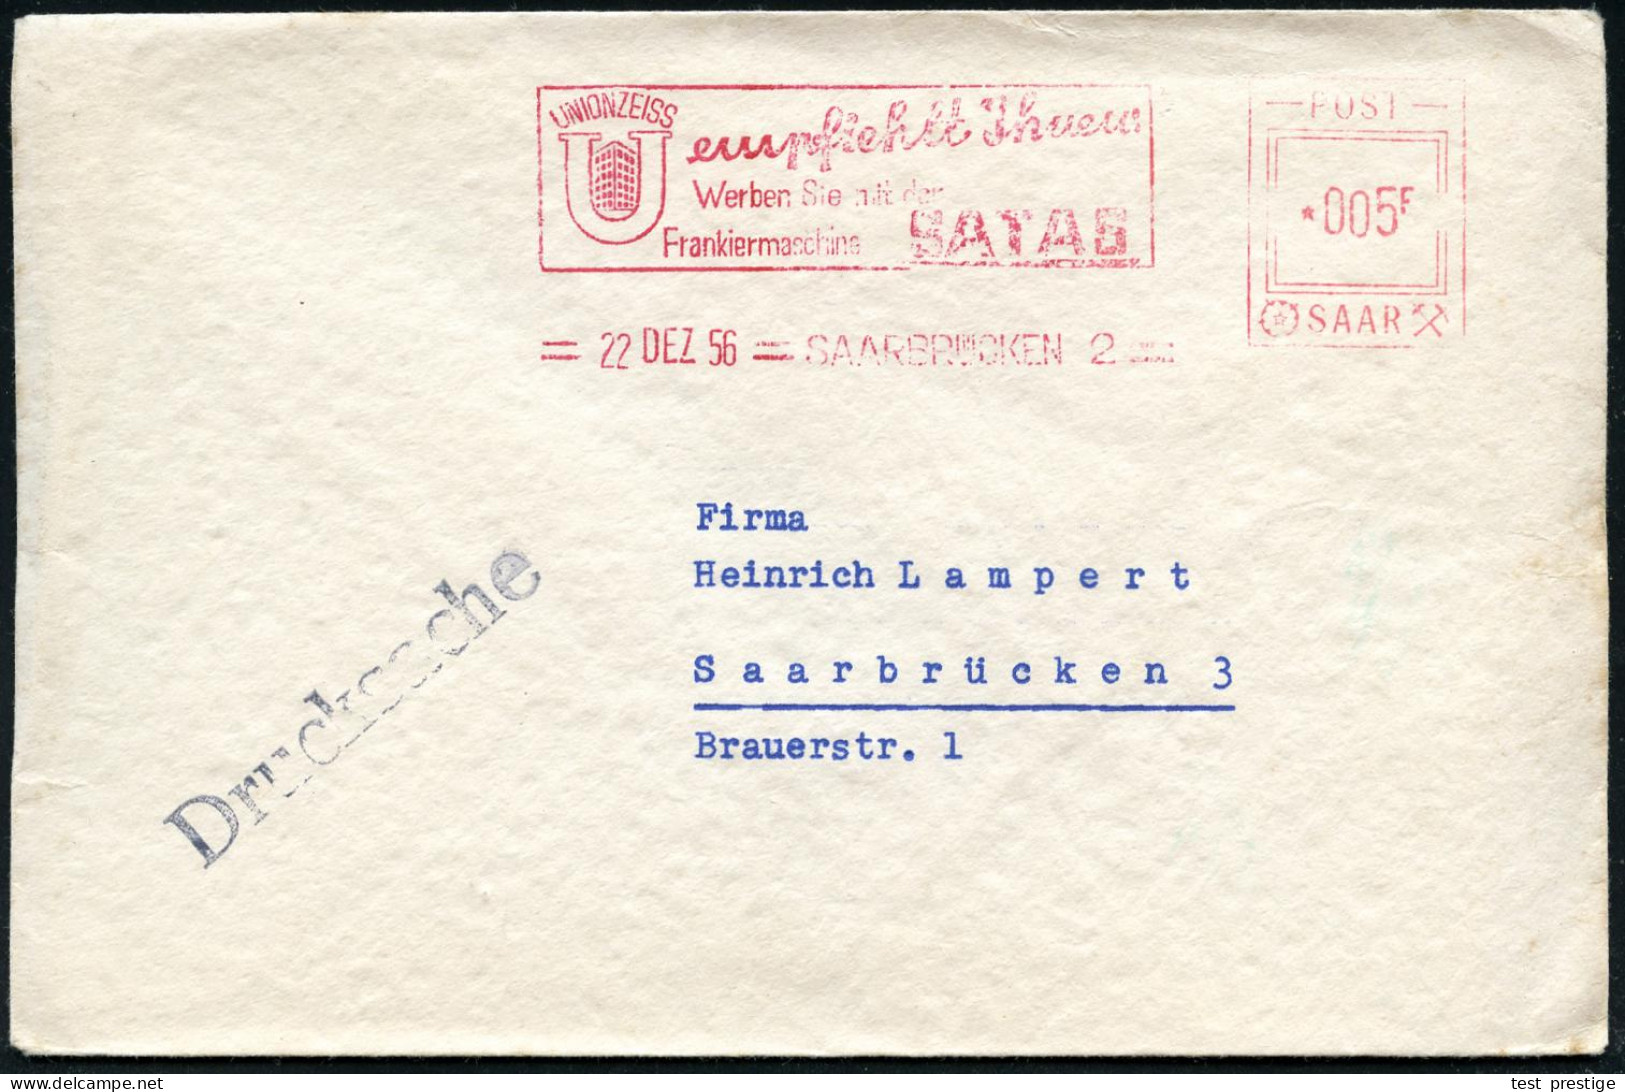 SAARBRÜCKEN 2/ UNION ZEISS../ Werben Sie Mit Der/ Frankiermaschine SATAS 1956 (22.12.) AFS Satas "POST SAAR" 005 F. (Fir - Sonstige